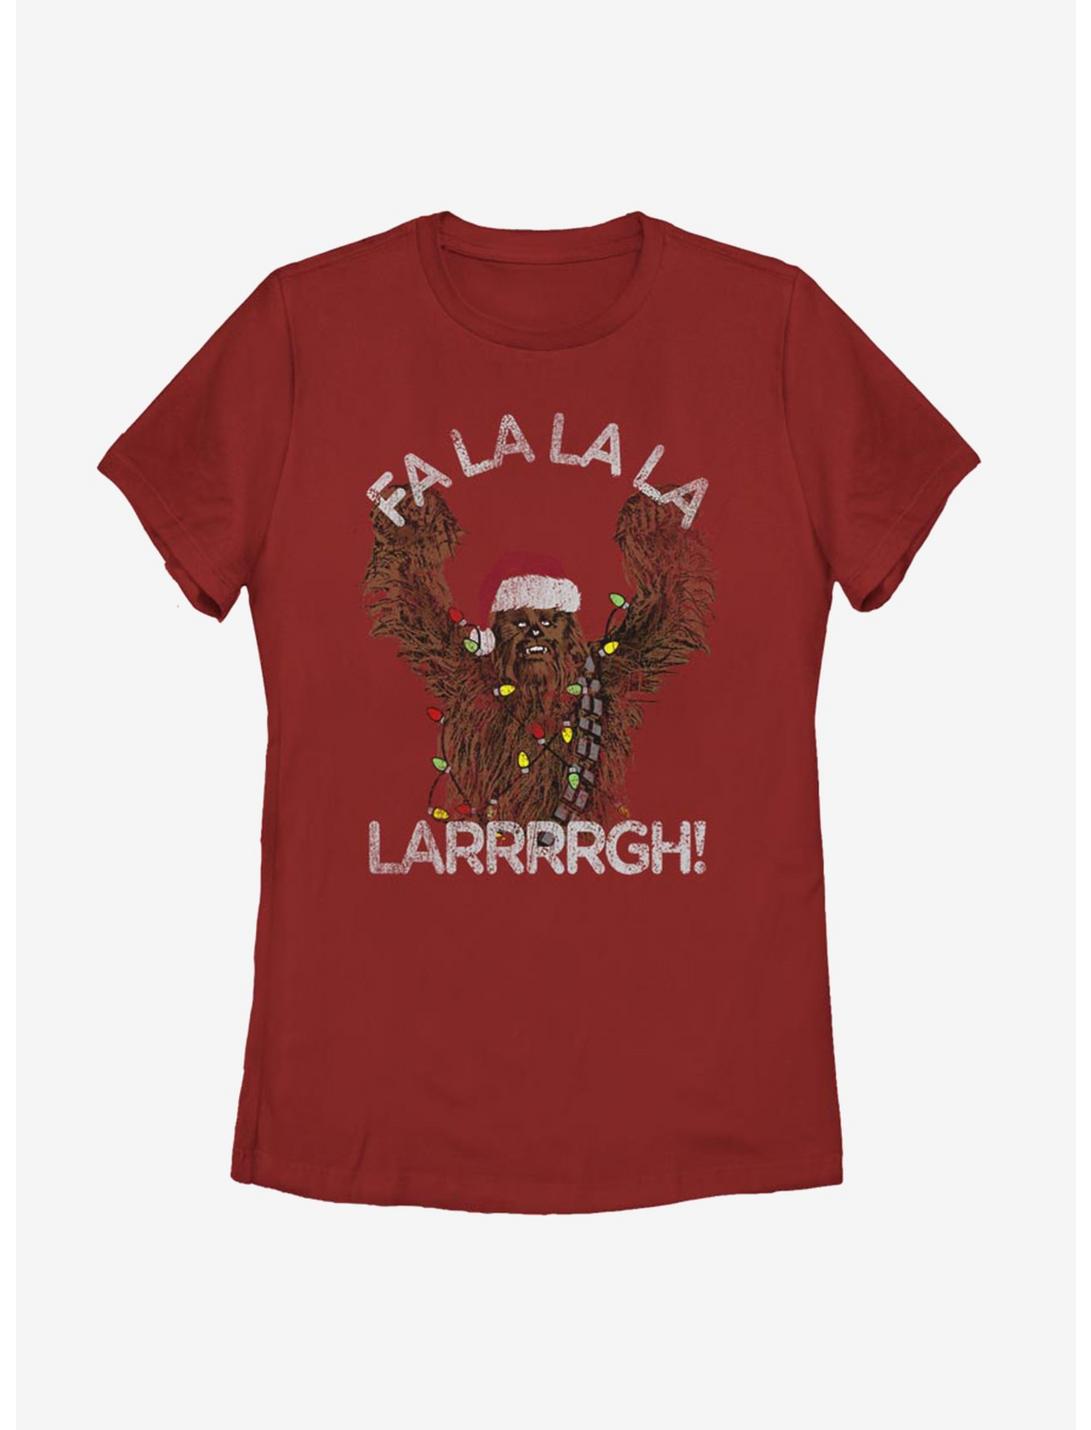 Star WarsChewie Fa La La Larrrrgh Womens T-Shirt, RED, hi-res